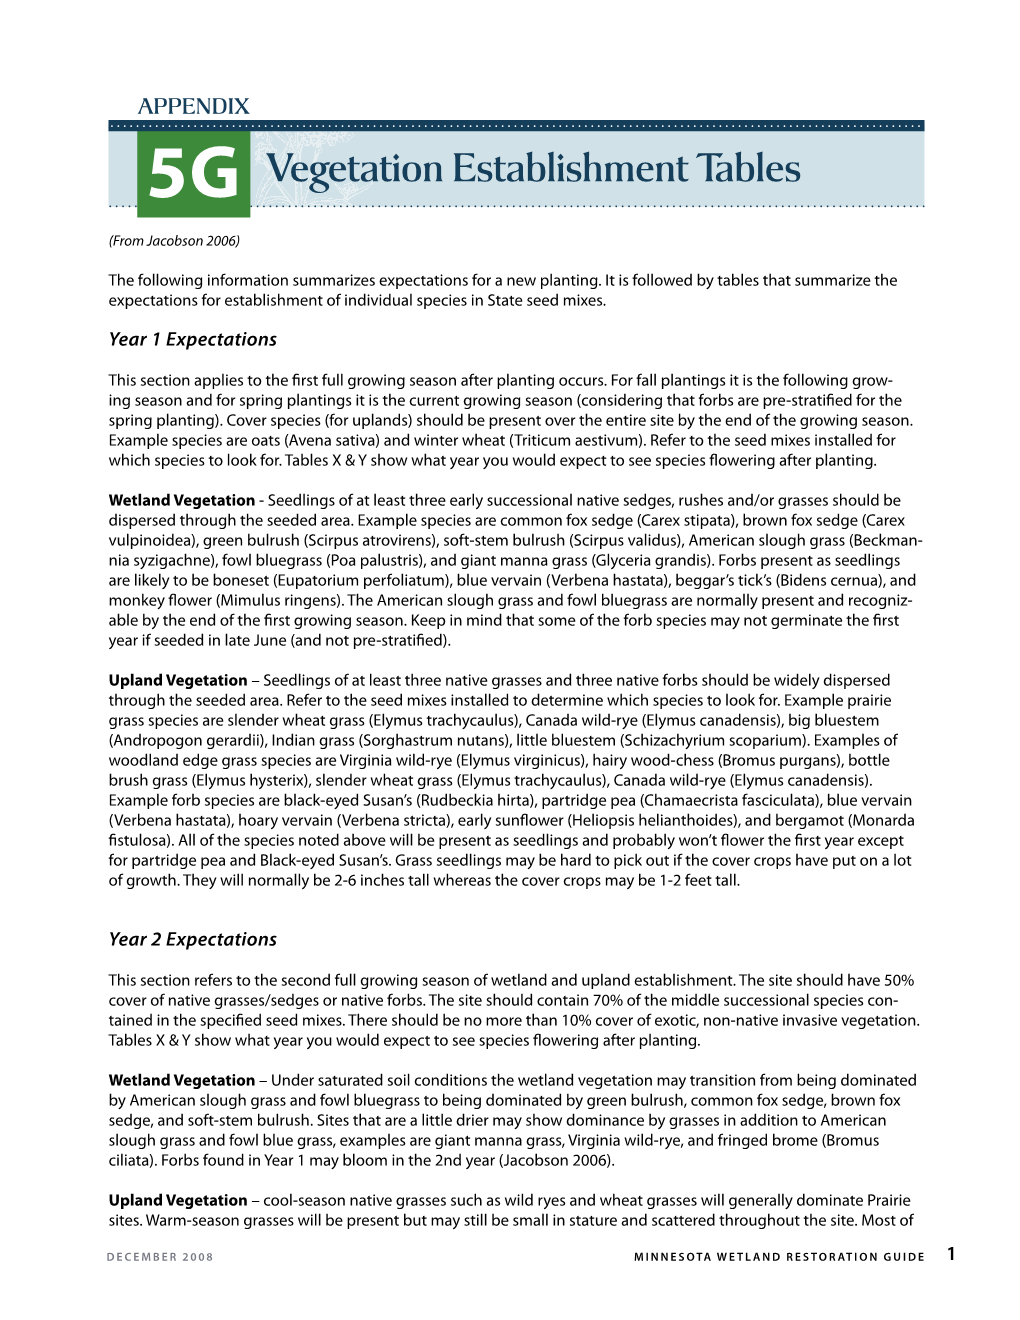 5-G Vegetation Establishment Tables